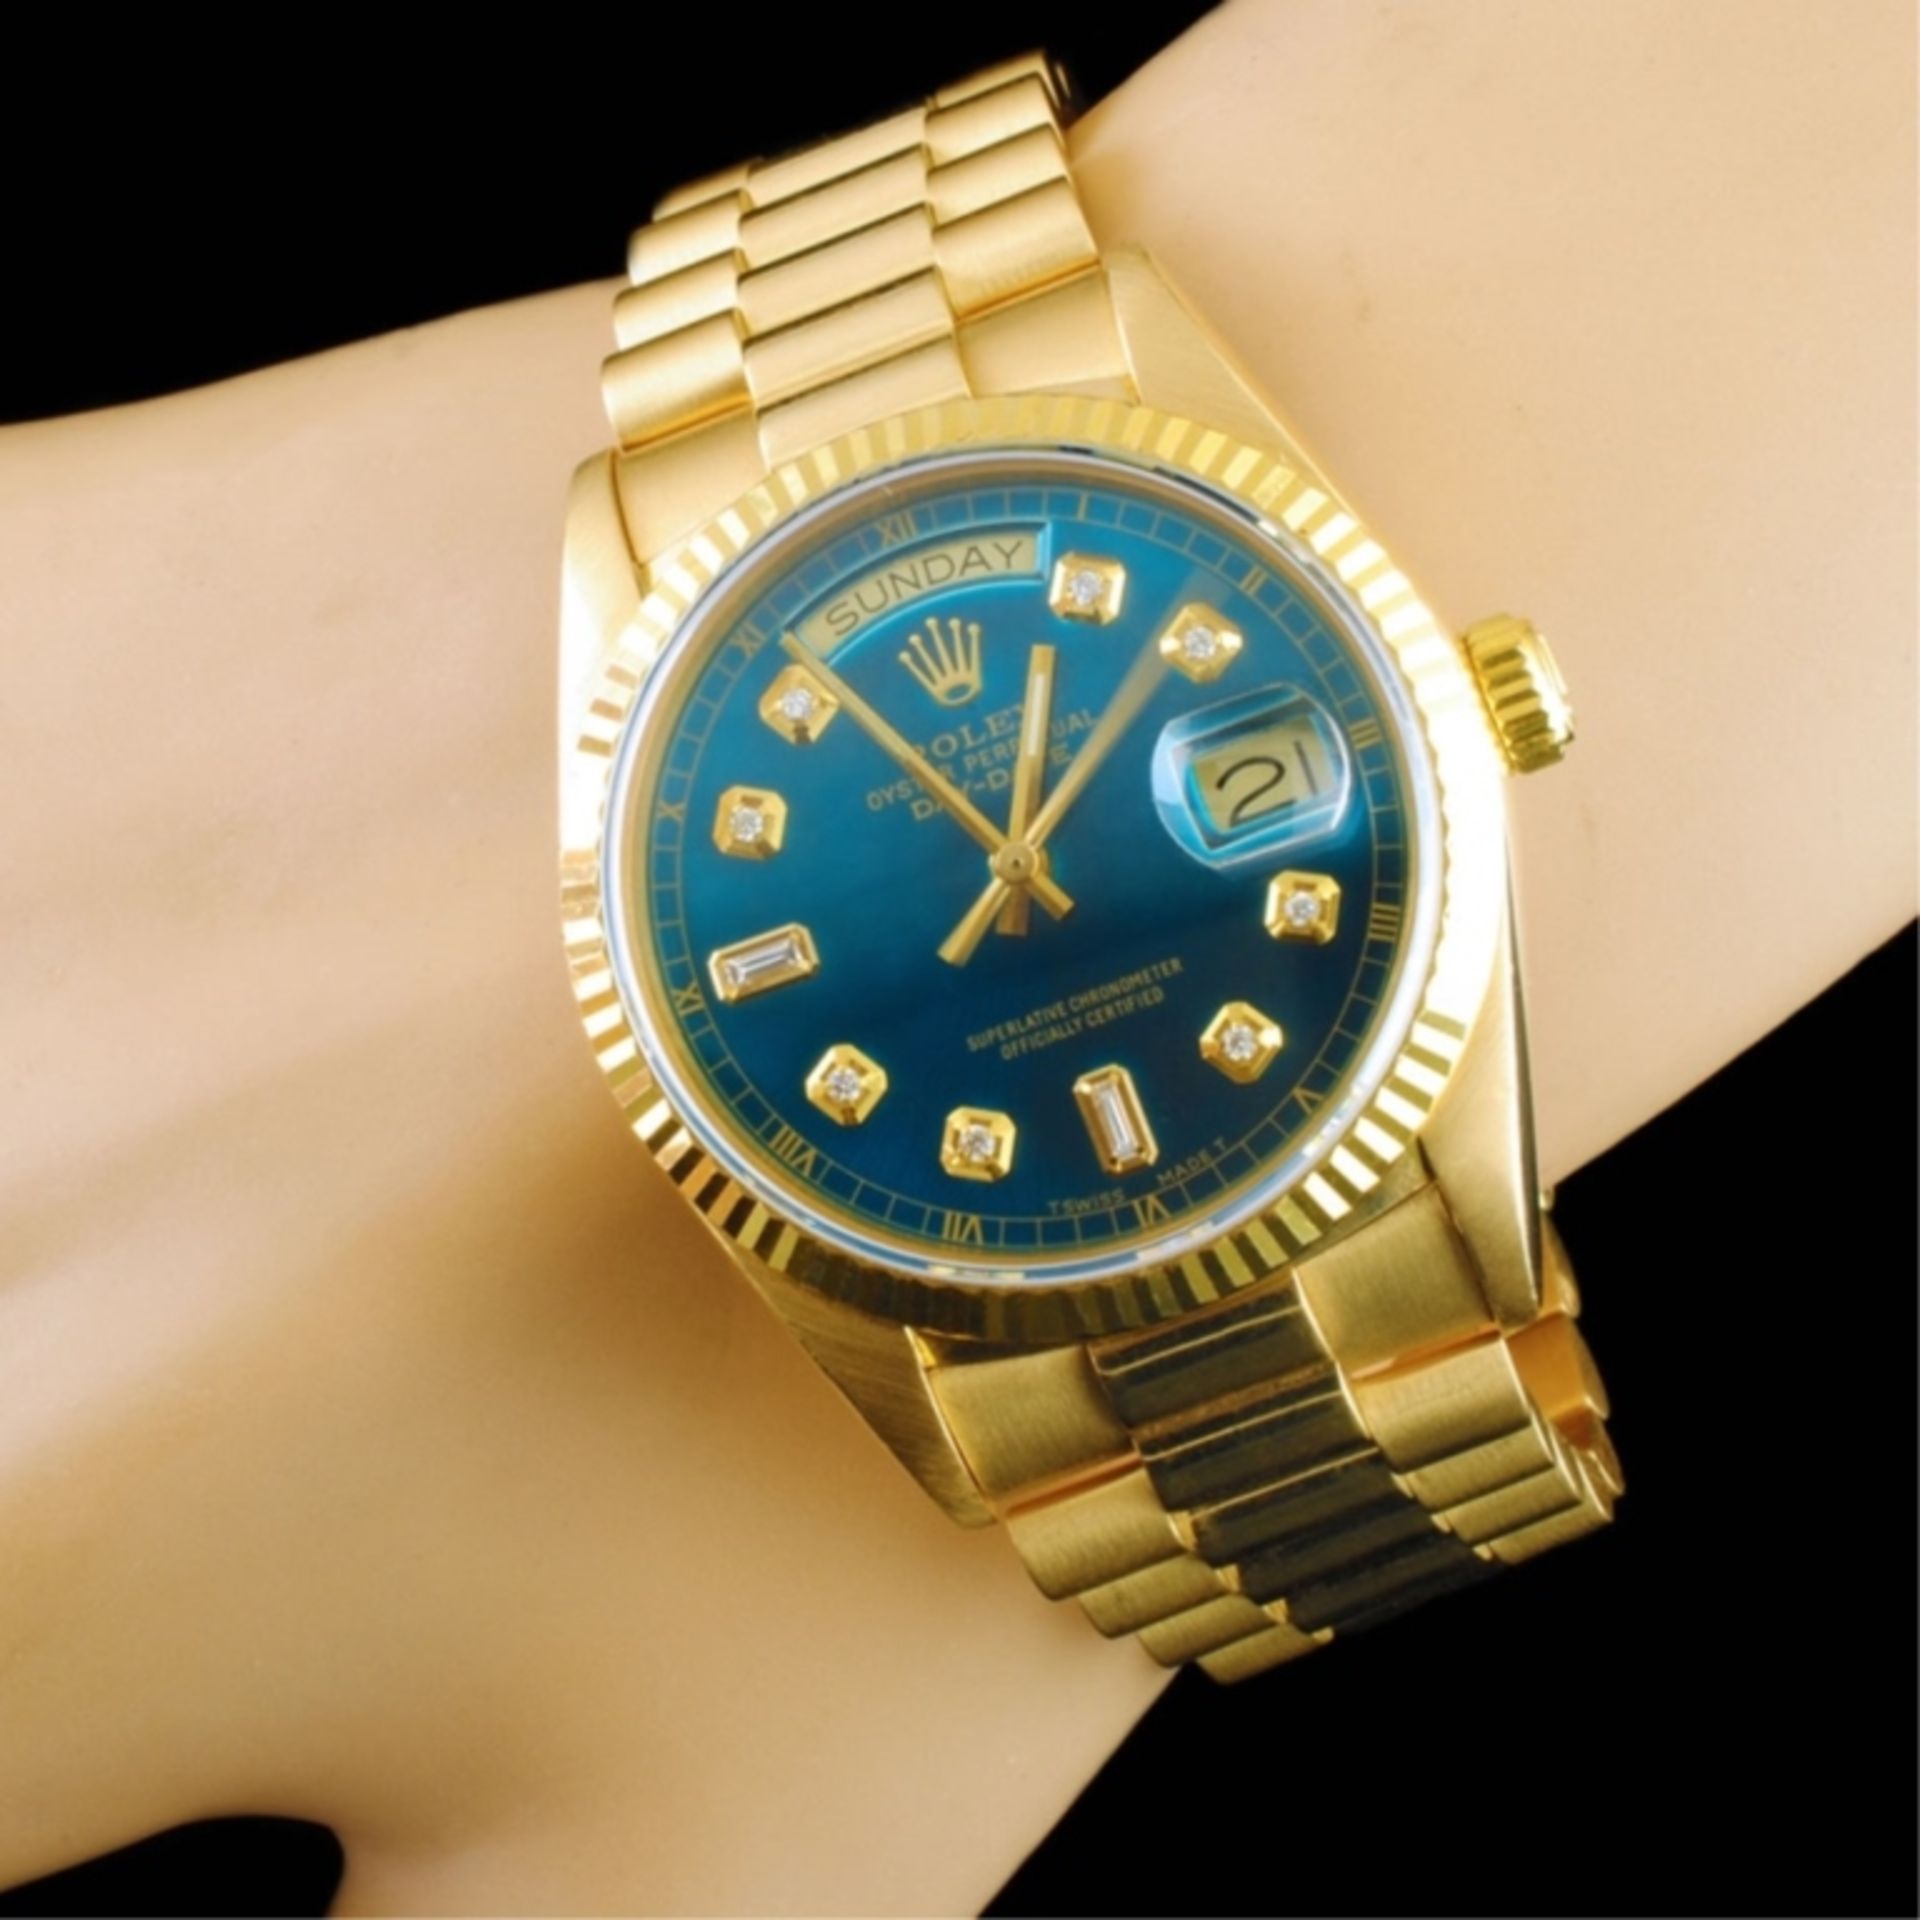 Rolex Day-Date 18K YG Diamond 36mm Wristwatch - Image 2 of 6